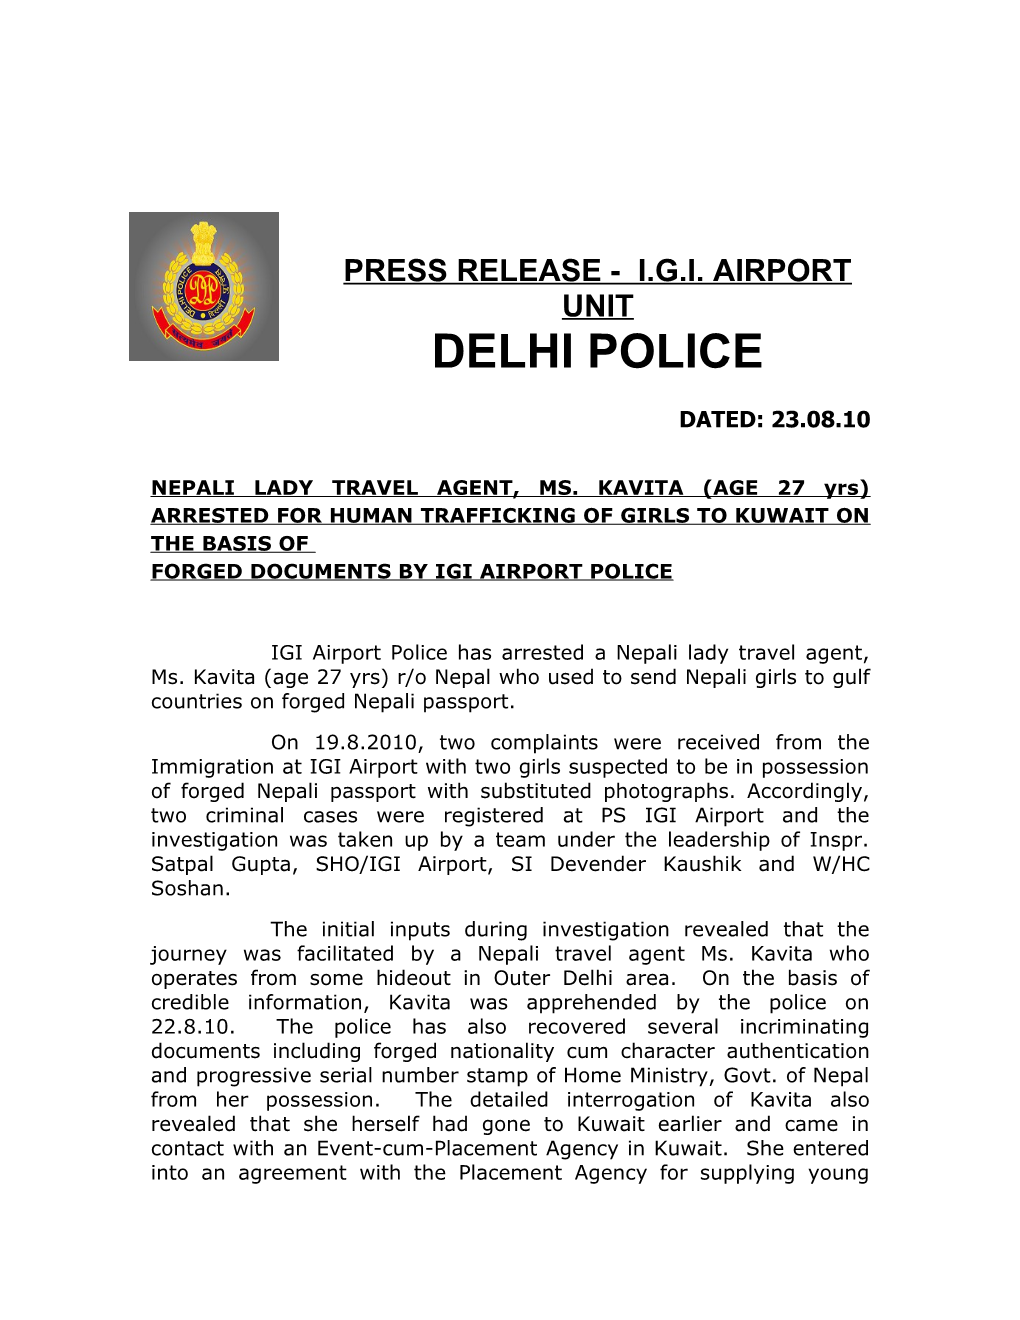 Press Release - I.G.I. Airport Unit